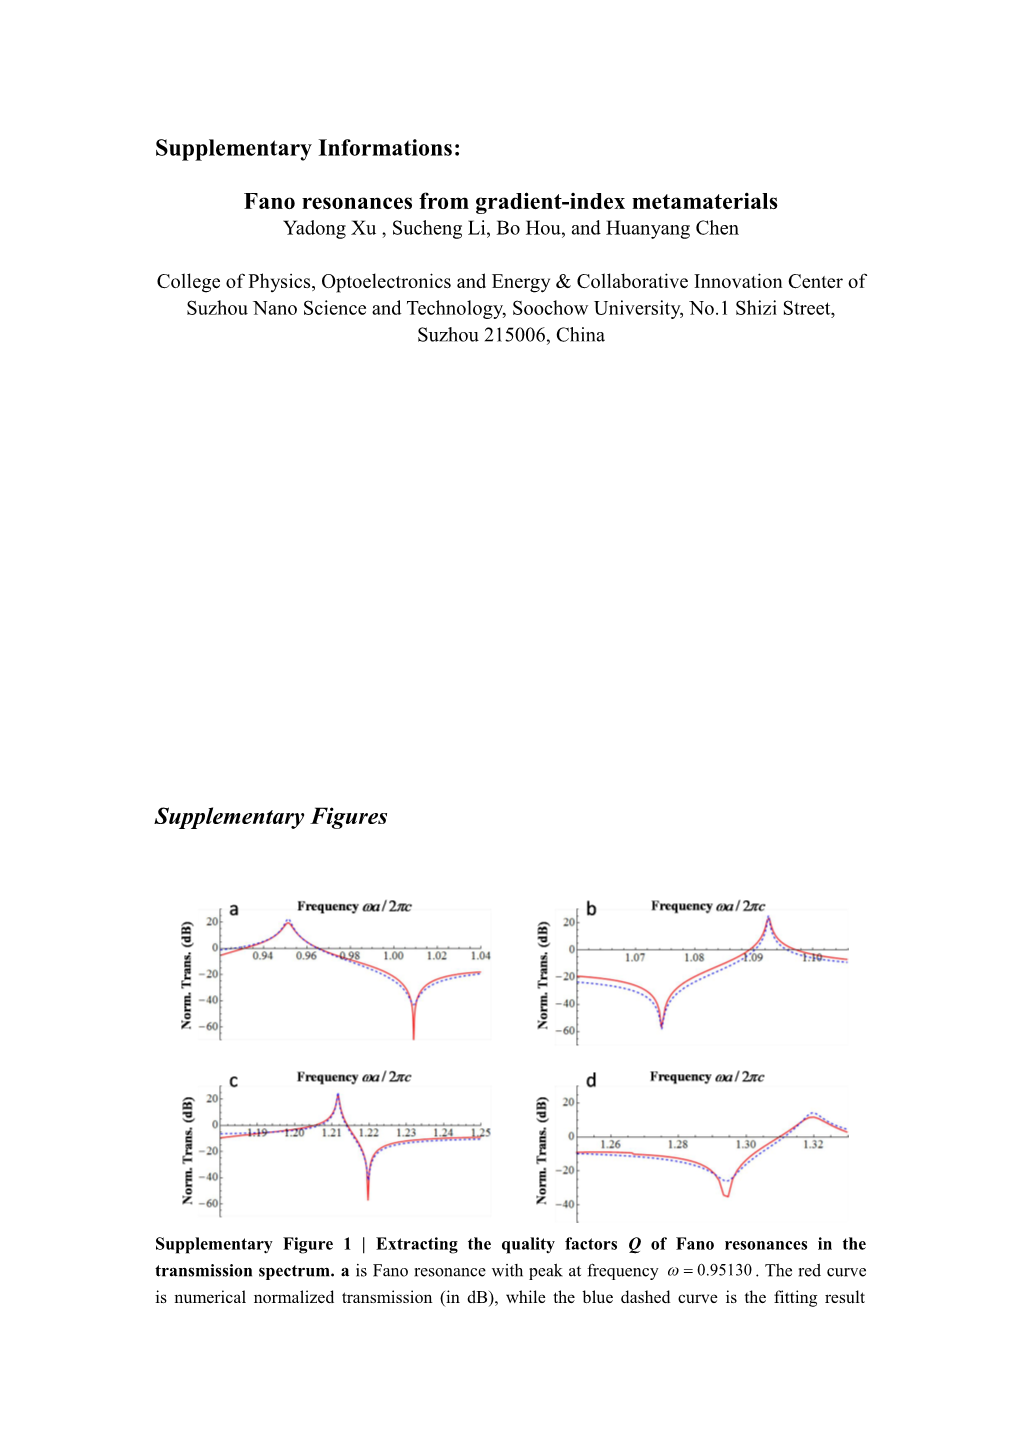 Fano Resonances from Gradient-Index Metamaterials